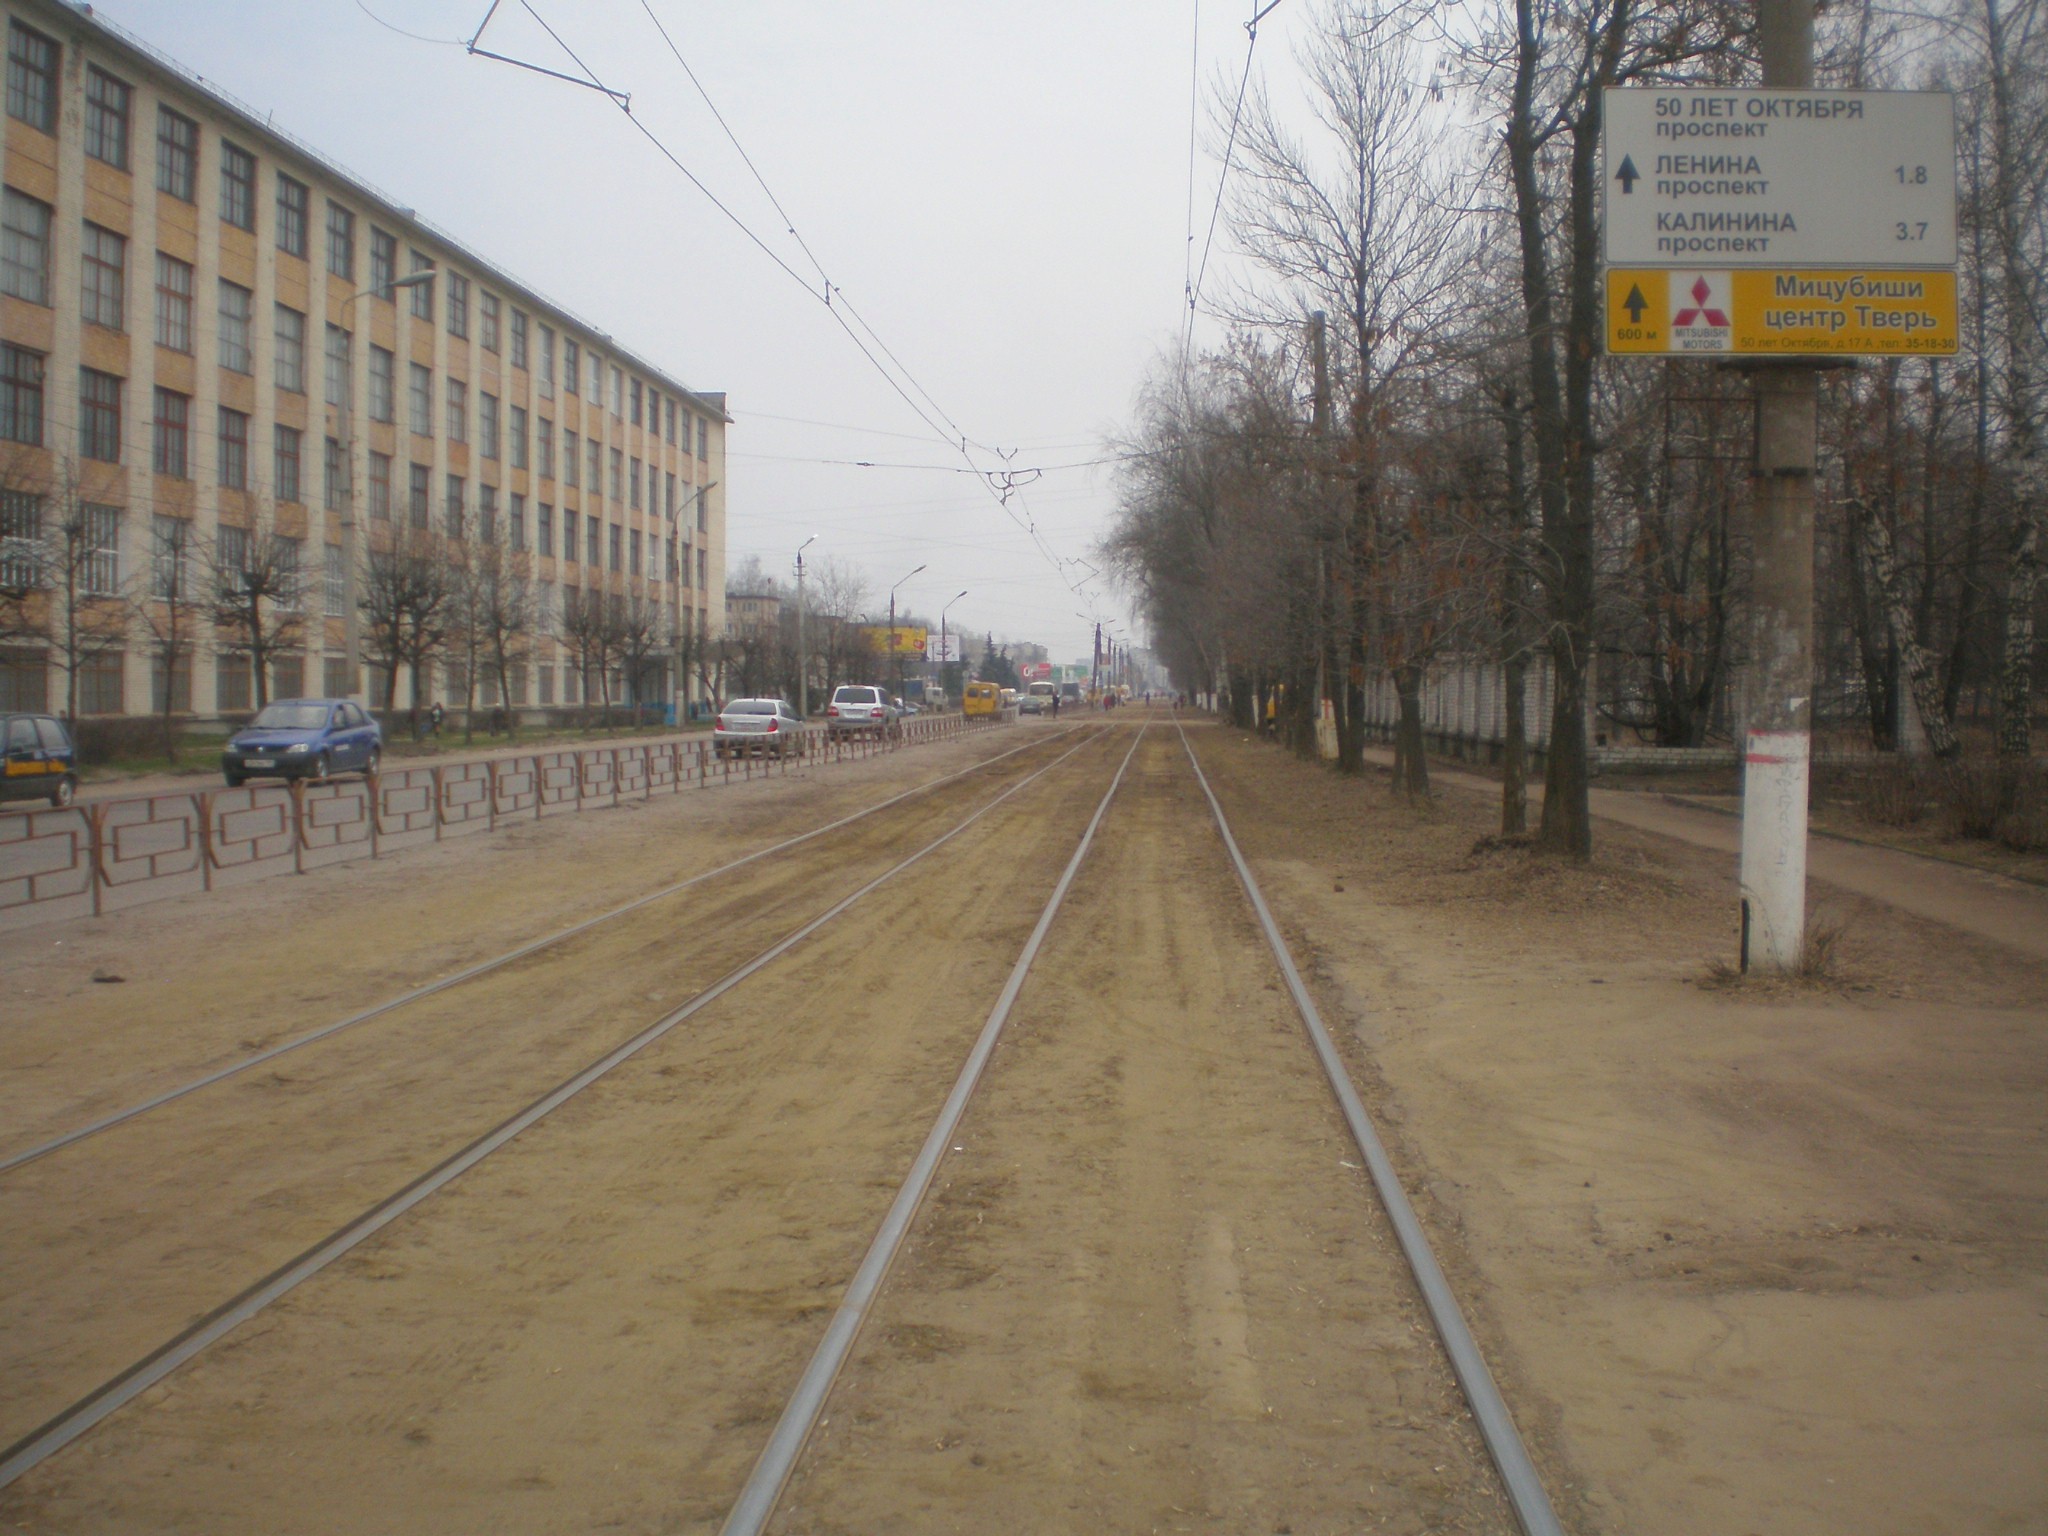 Тверской трамвай  —  фотографии, сделанные в 2009 году (часть 5)